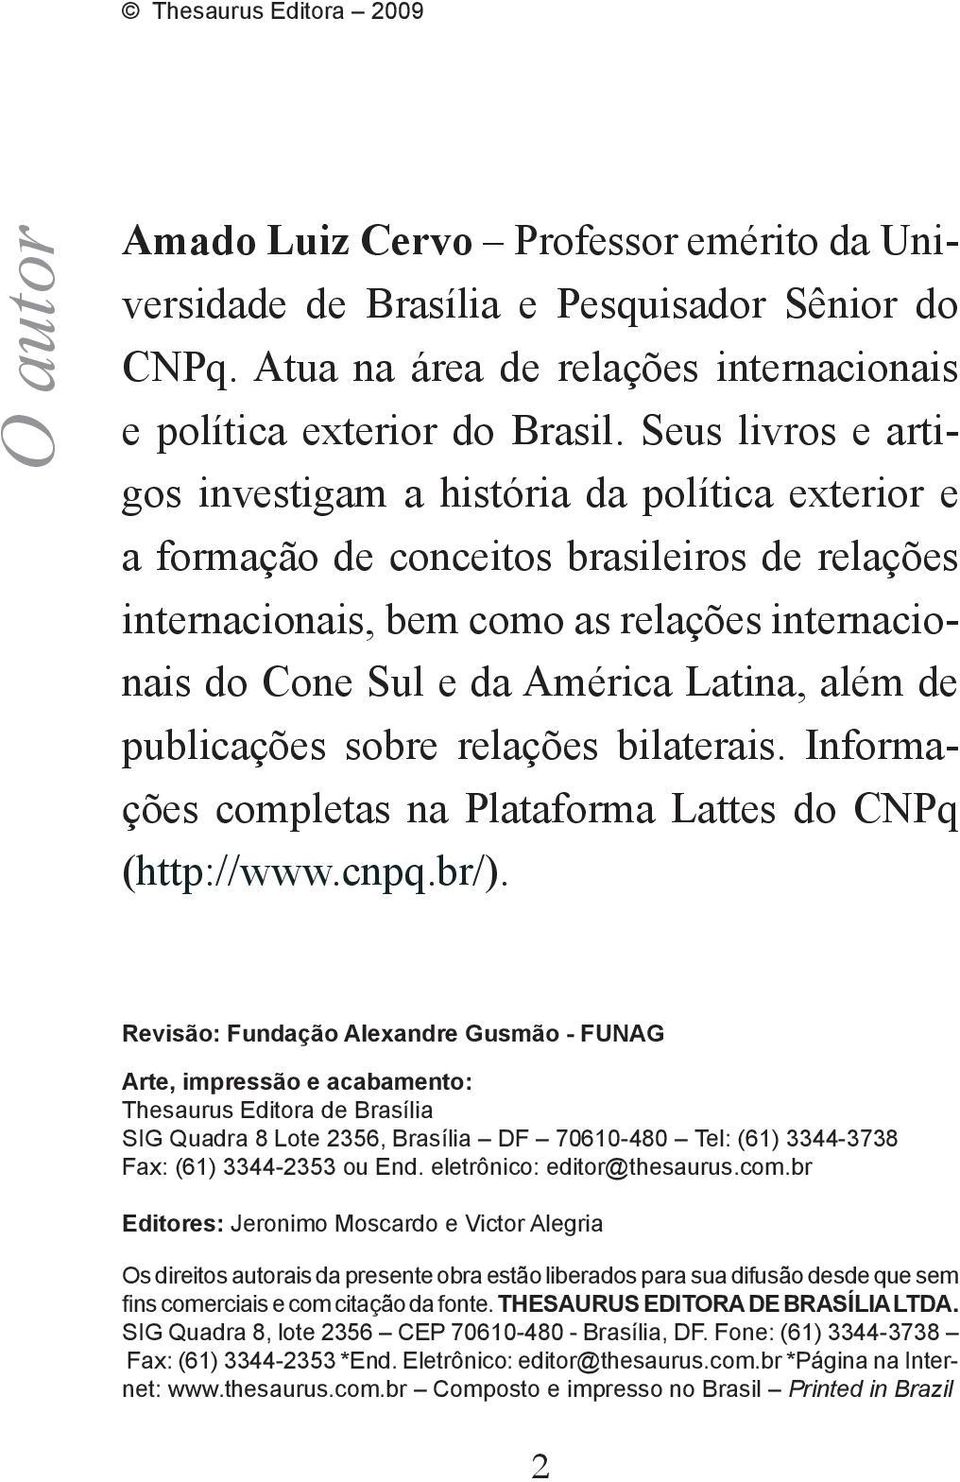 além de publicações sobre relações bilaterais. Informações completas na Plataforma Lattes do CNPq (http://www.cnpq.br/).